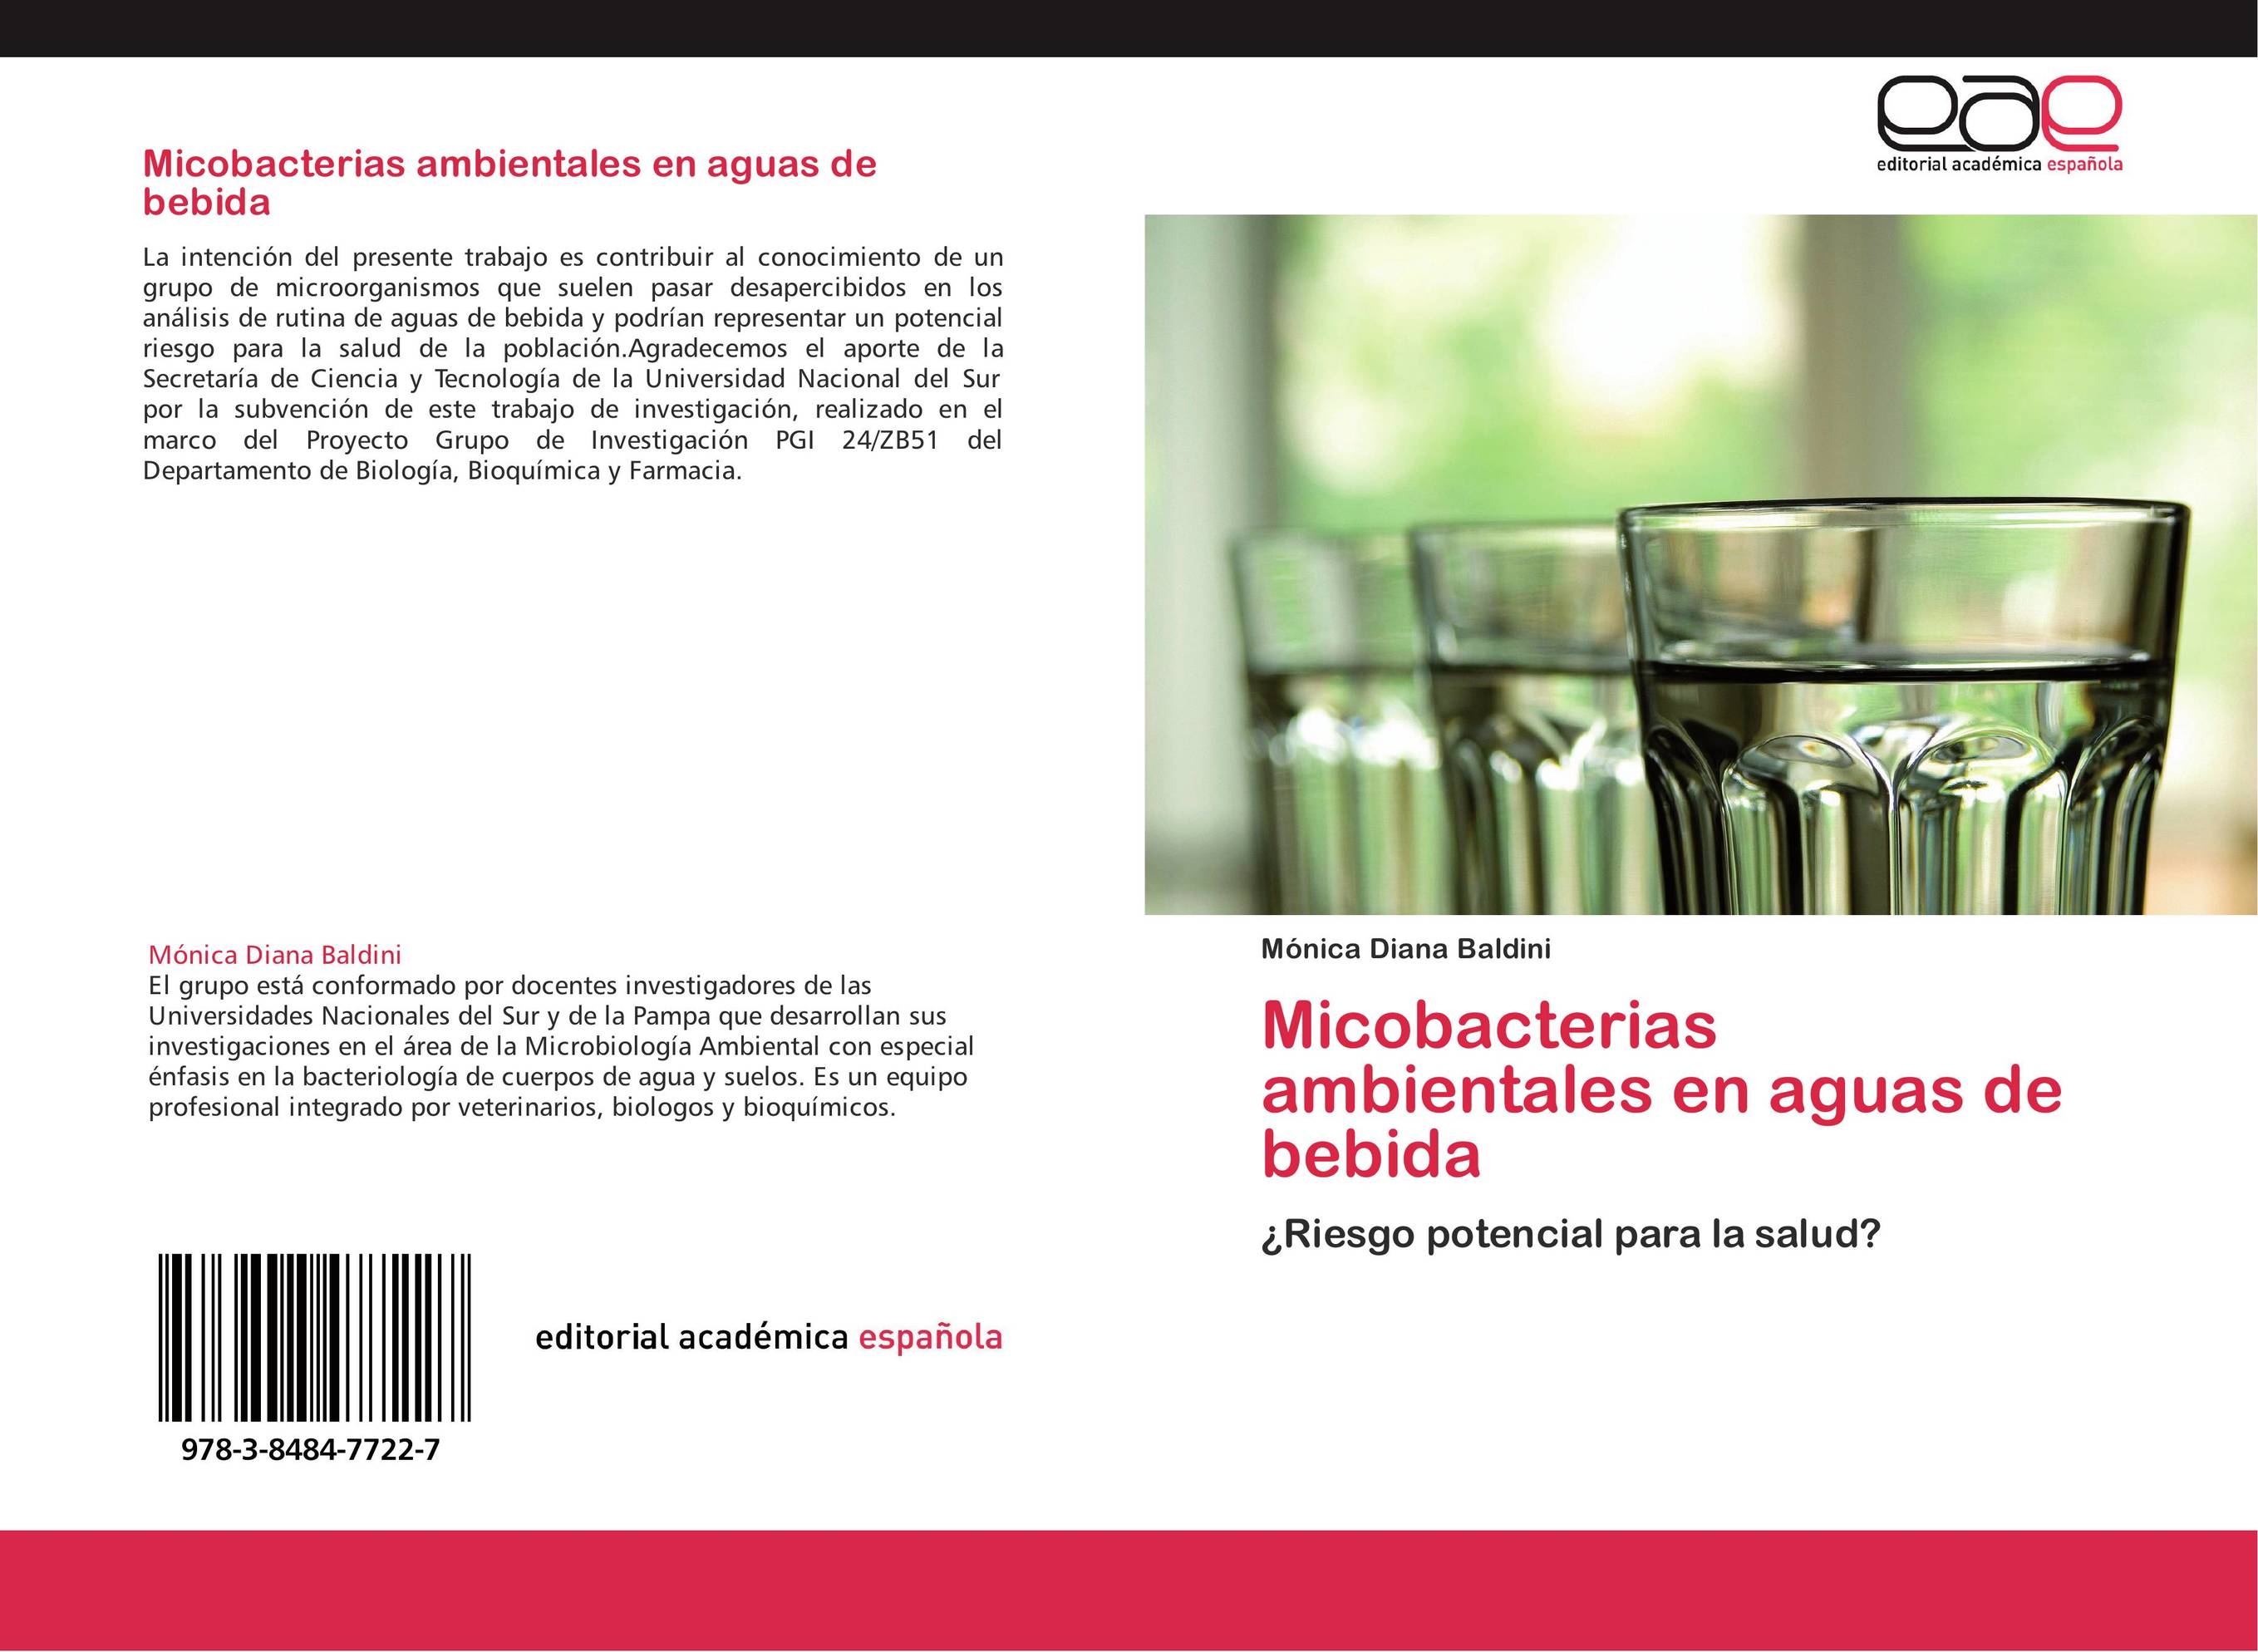 Micobacterias ambientales en aguas de bebida